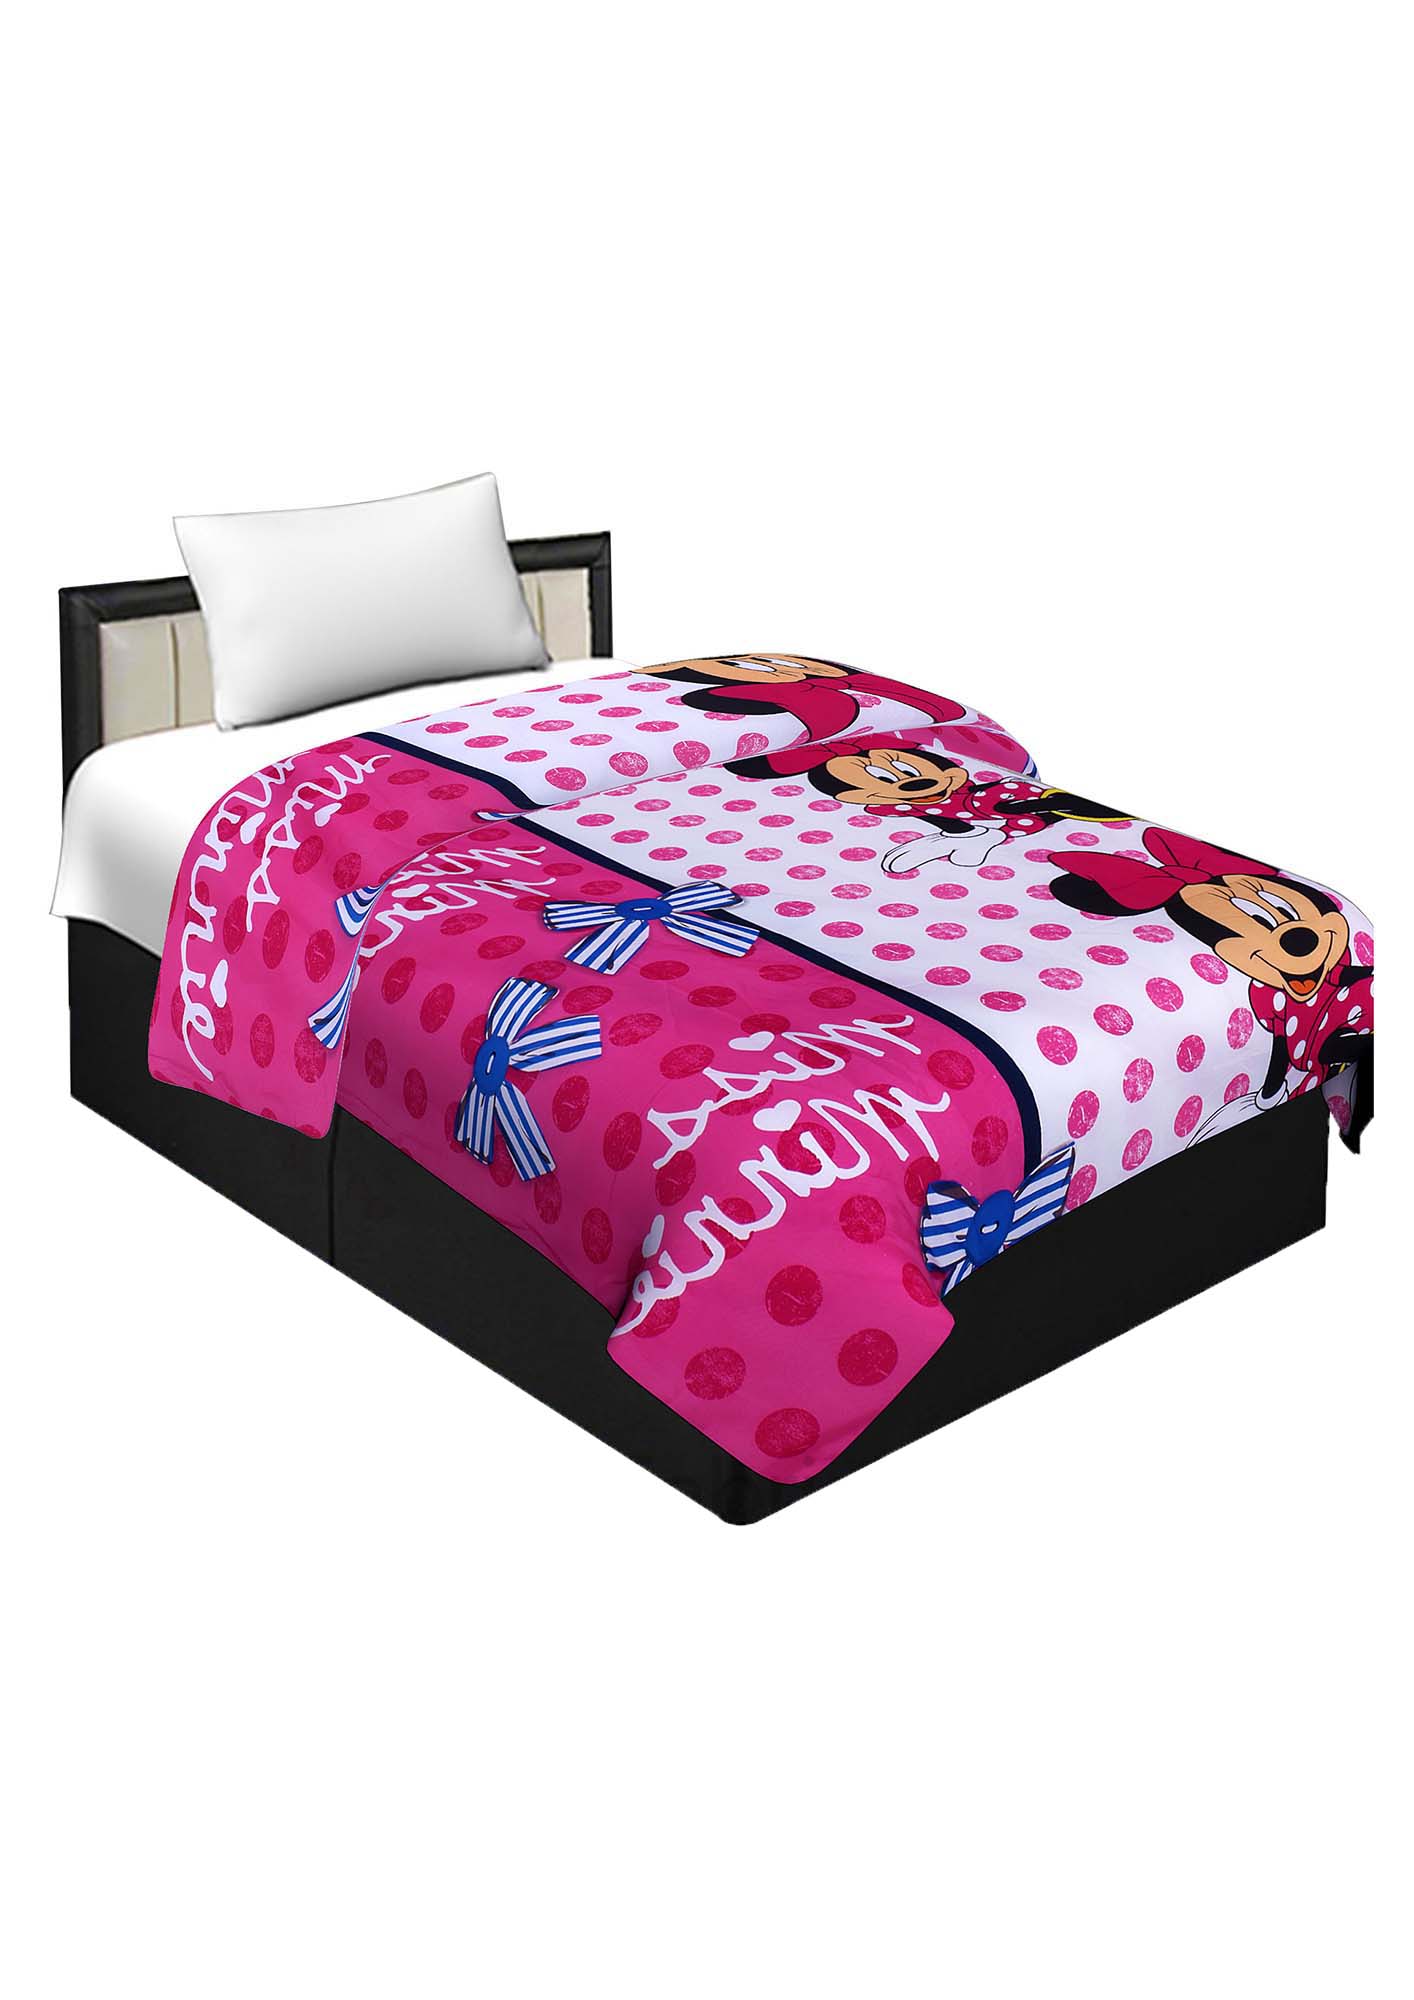 Cotton Minnie Mouse Pink Reversible Single Blanket/Duvet/Quilt/AC Dohar